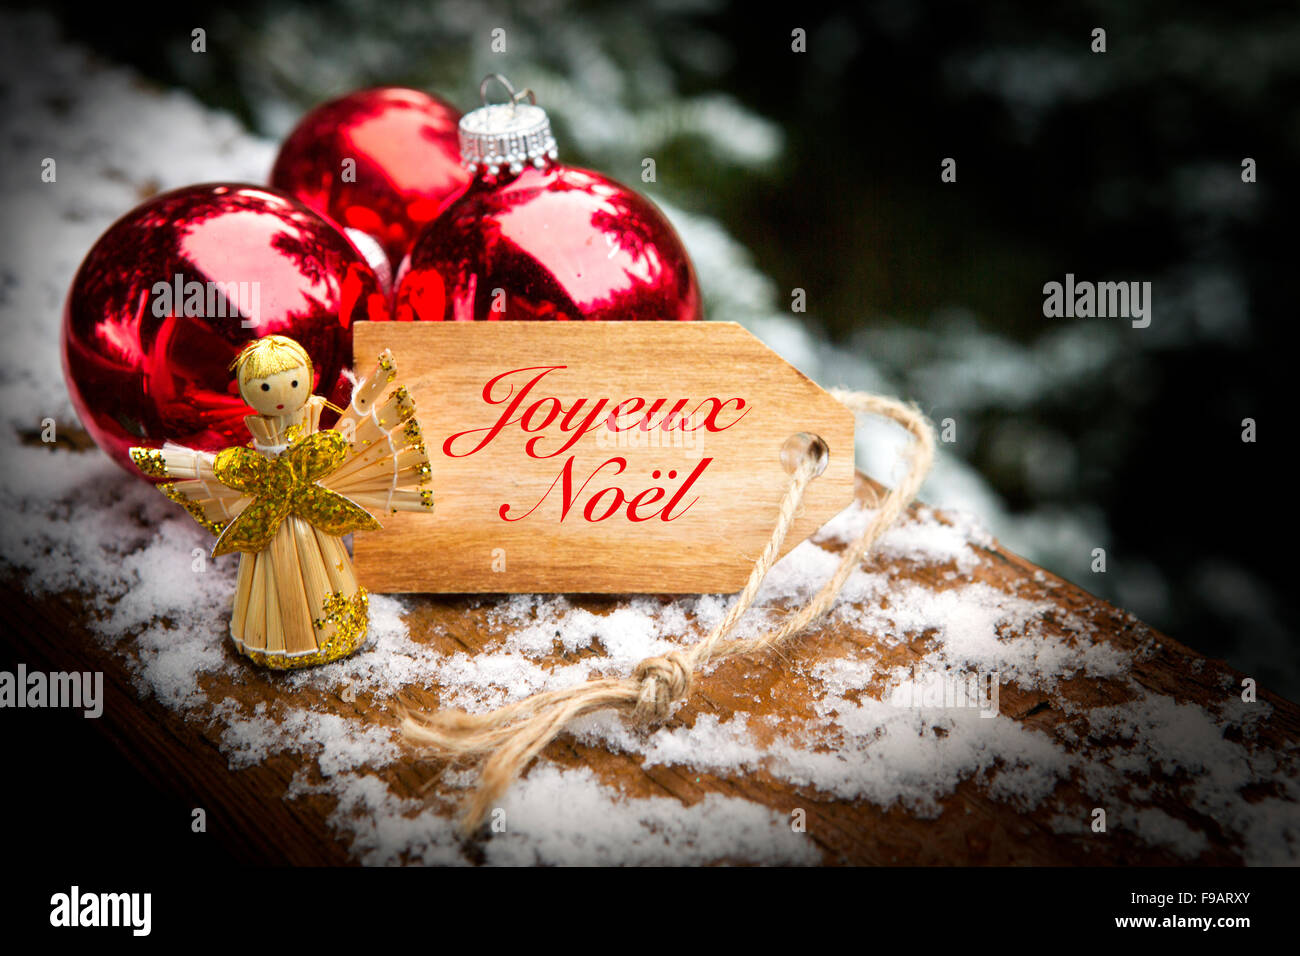 Tag di legno con le parole francesi "joyeux noel' (Merry Christmas) accanto a palle di Natale e Angelo Foto Stock